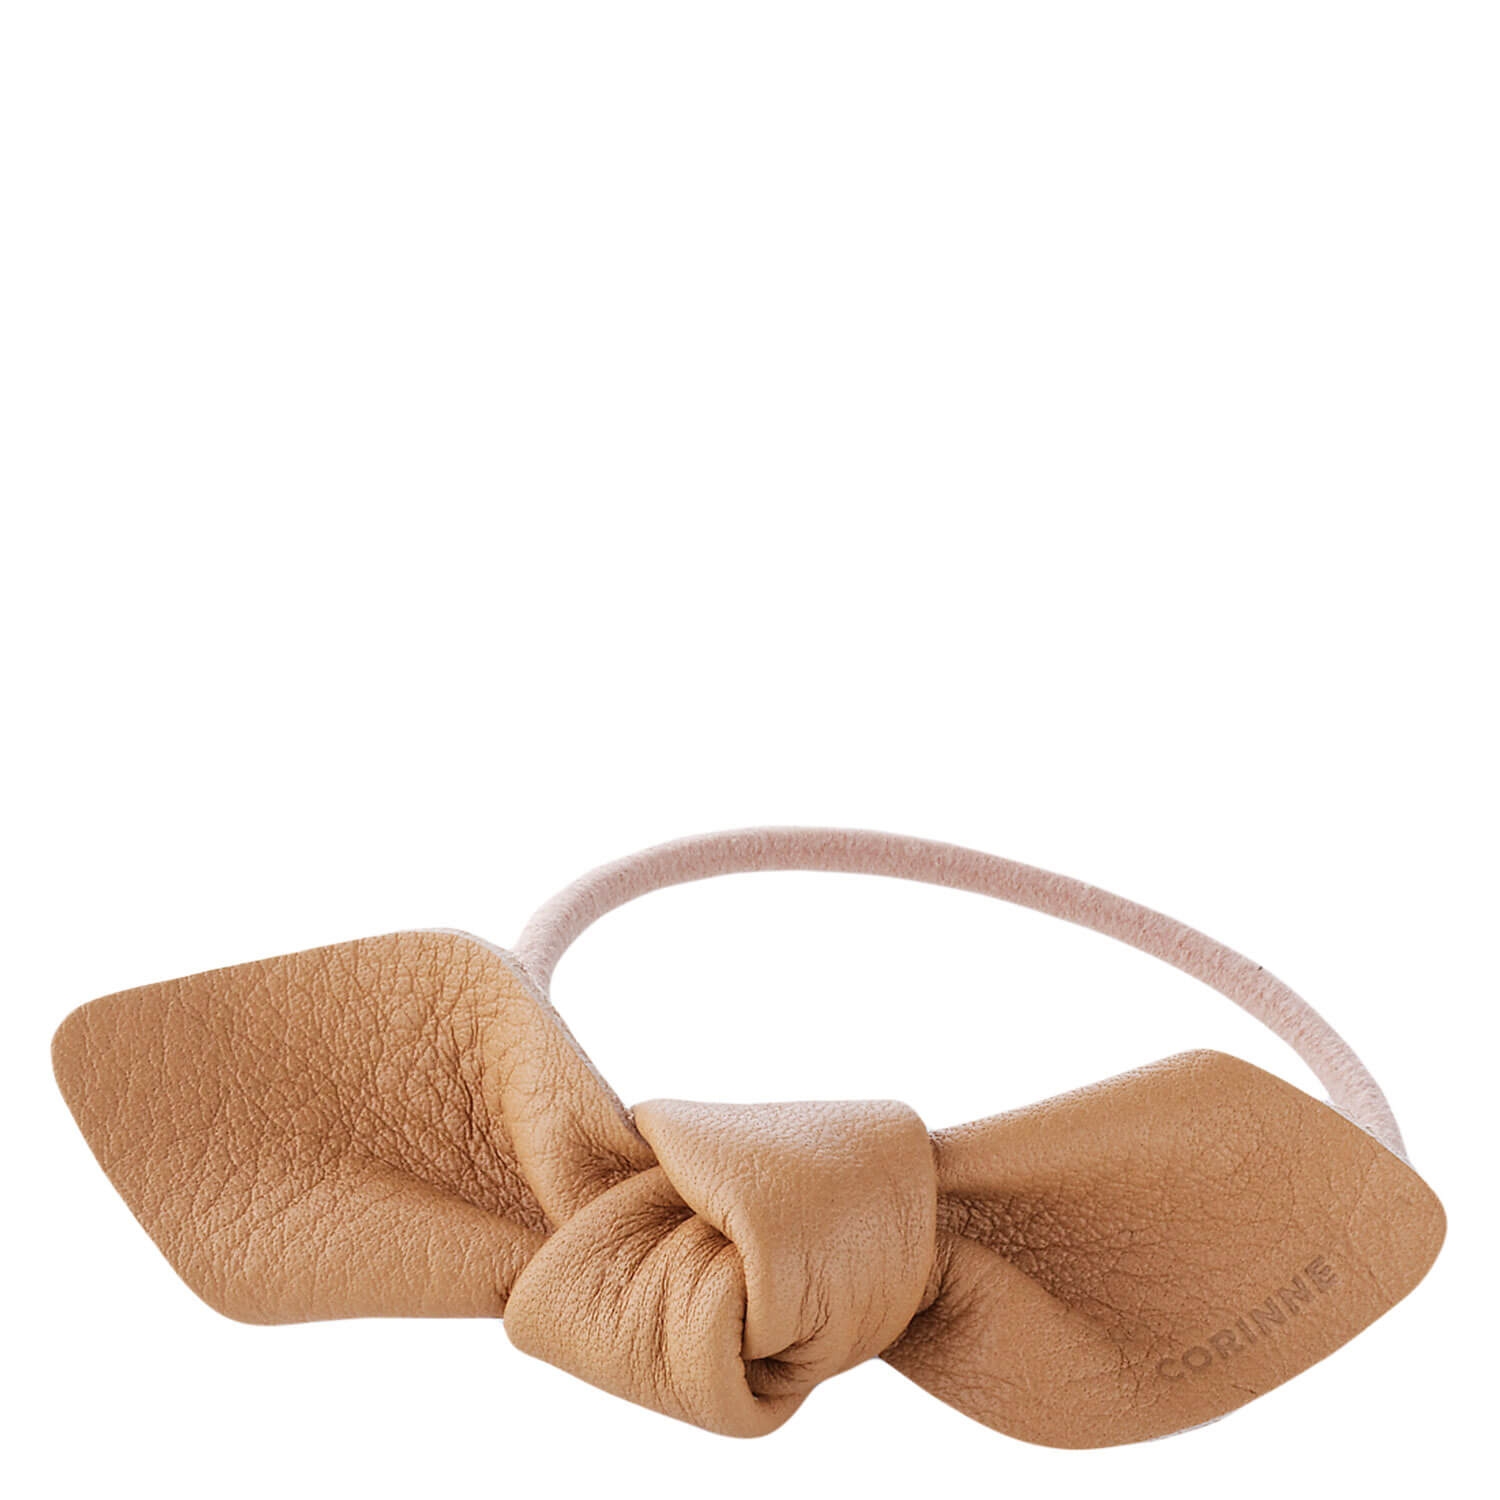 Produktbild von Corinne World - Leather Bow Small Hair Tie Camel